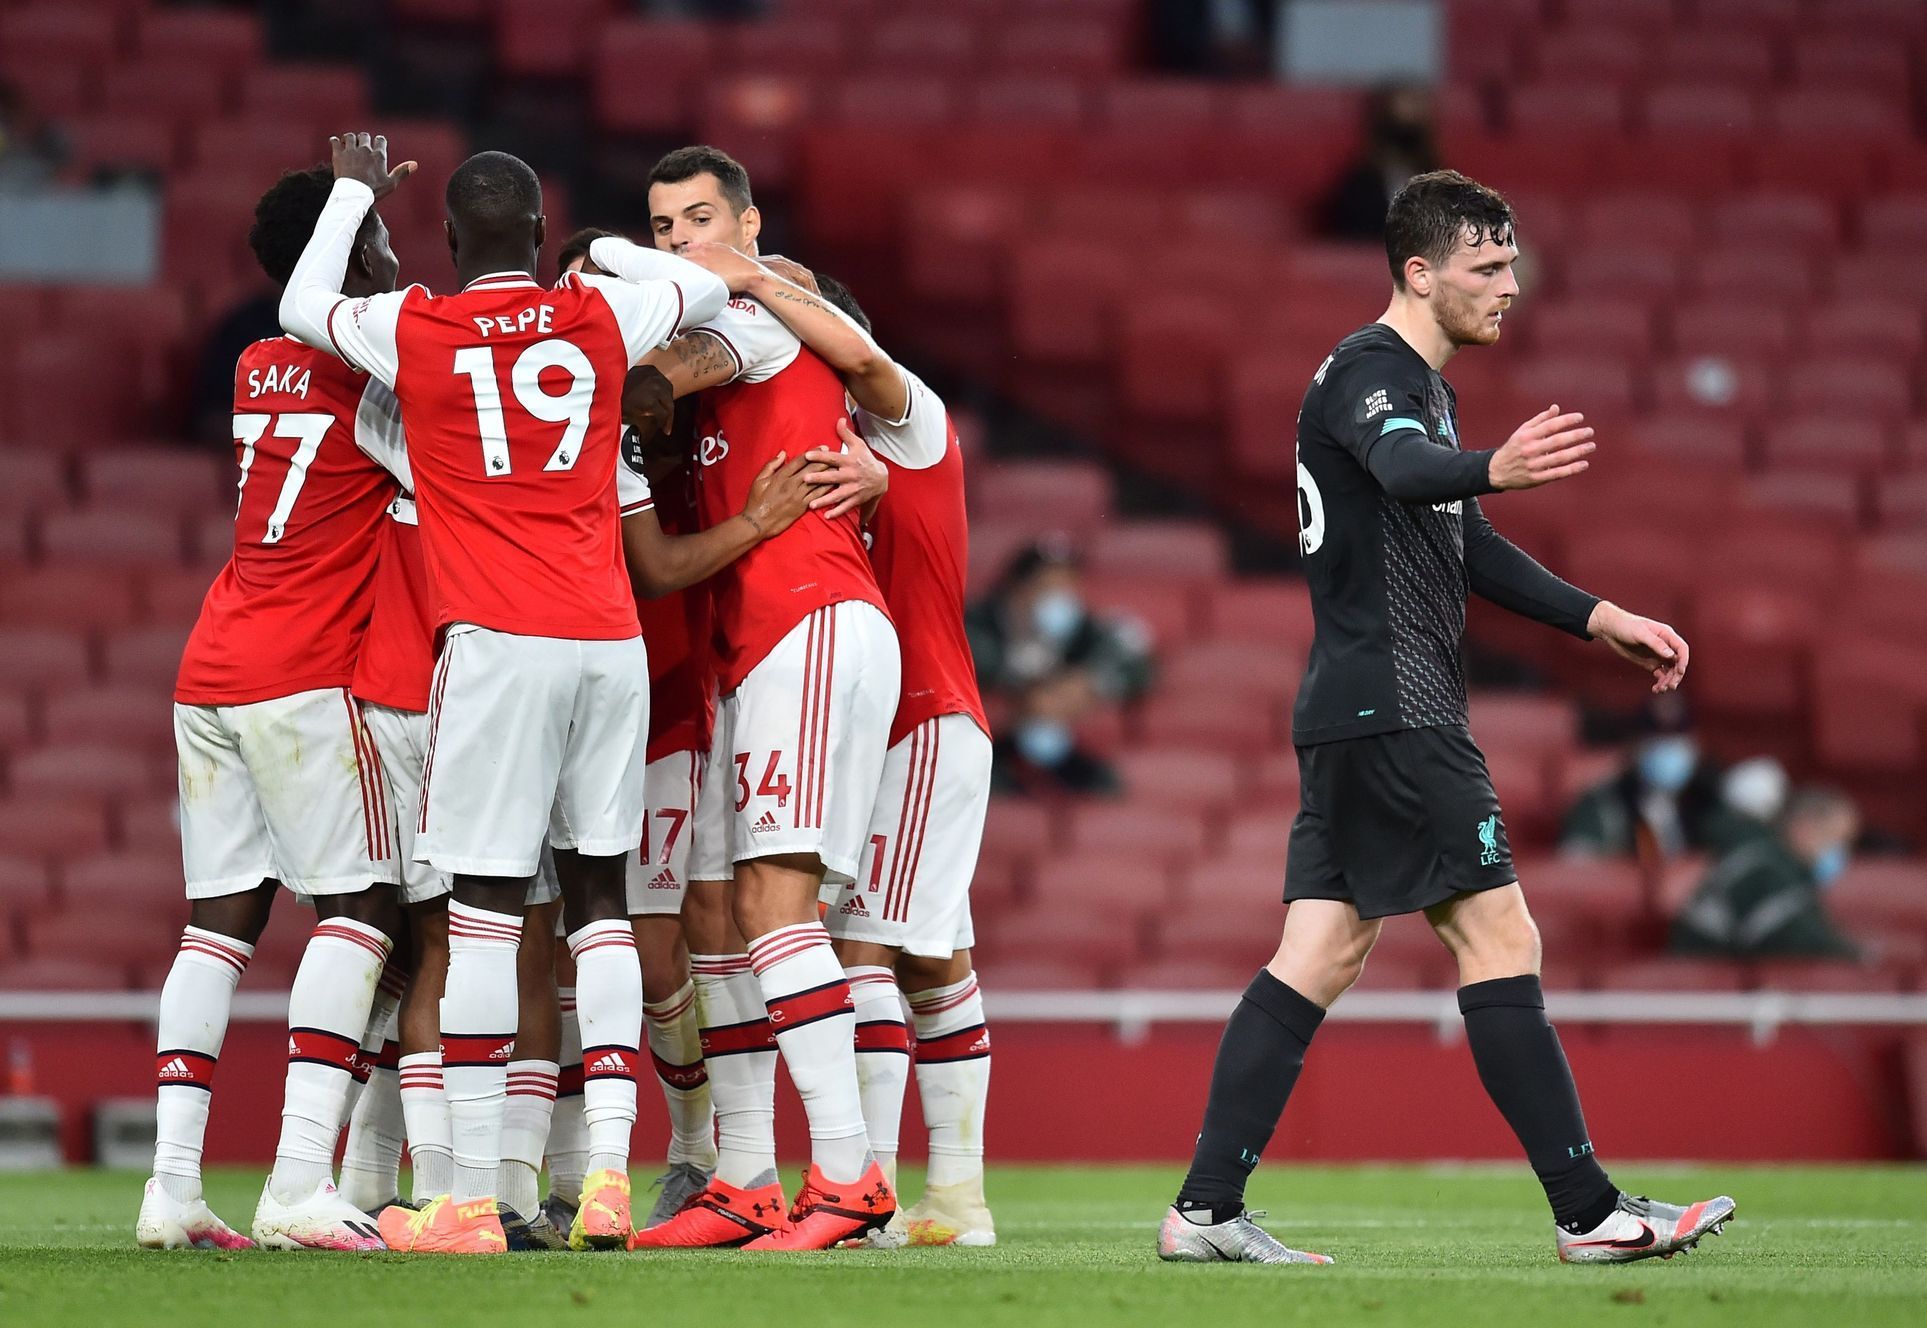 36. kolo anglické fotbalové ligy 2019/20, Arsenal - Liverpool: Radost domácích fotbalistů